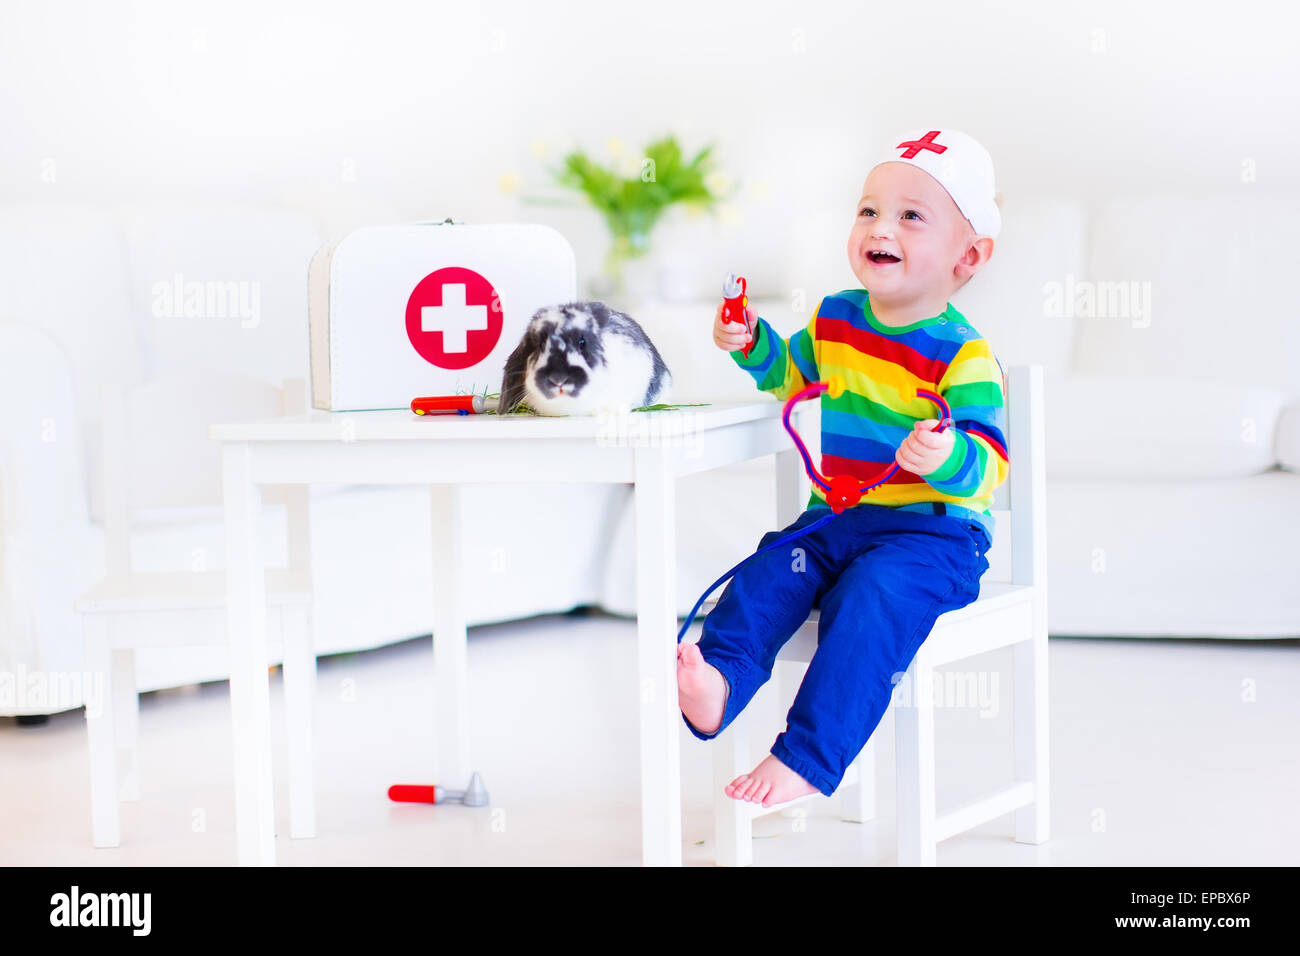 Carino Laughing baby boy riproduzione animale medico con il suo coniglio in pet utilizzando uno stetoscopio giocattolo in un bianco nursery room Foto Stock